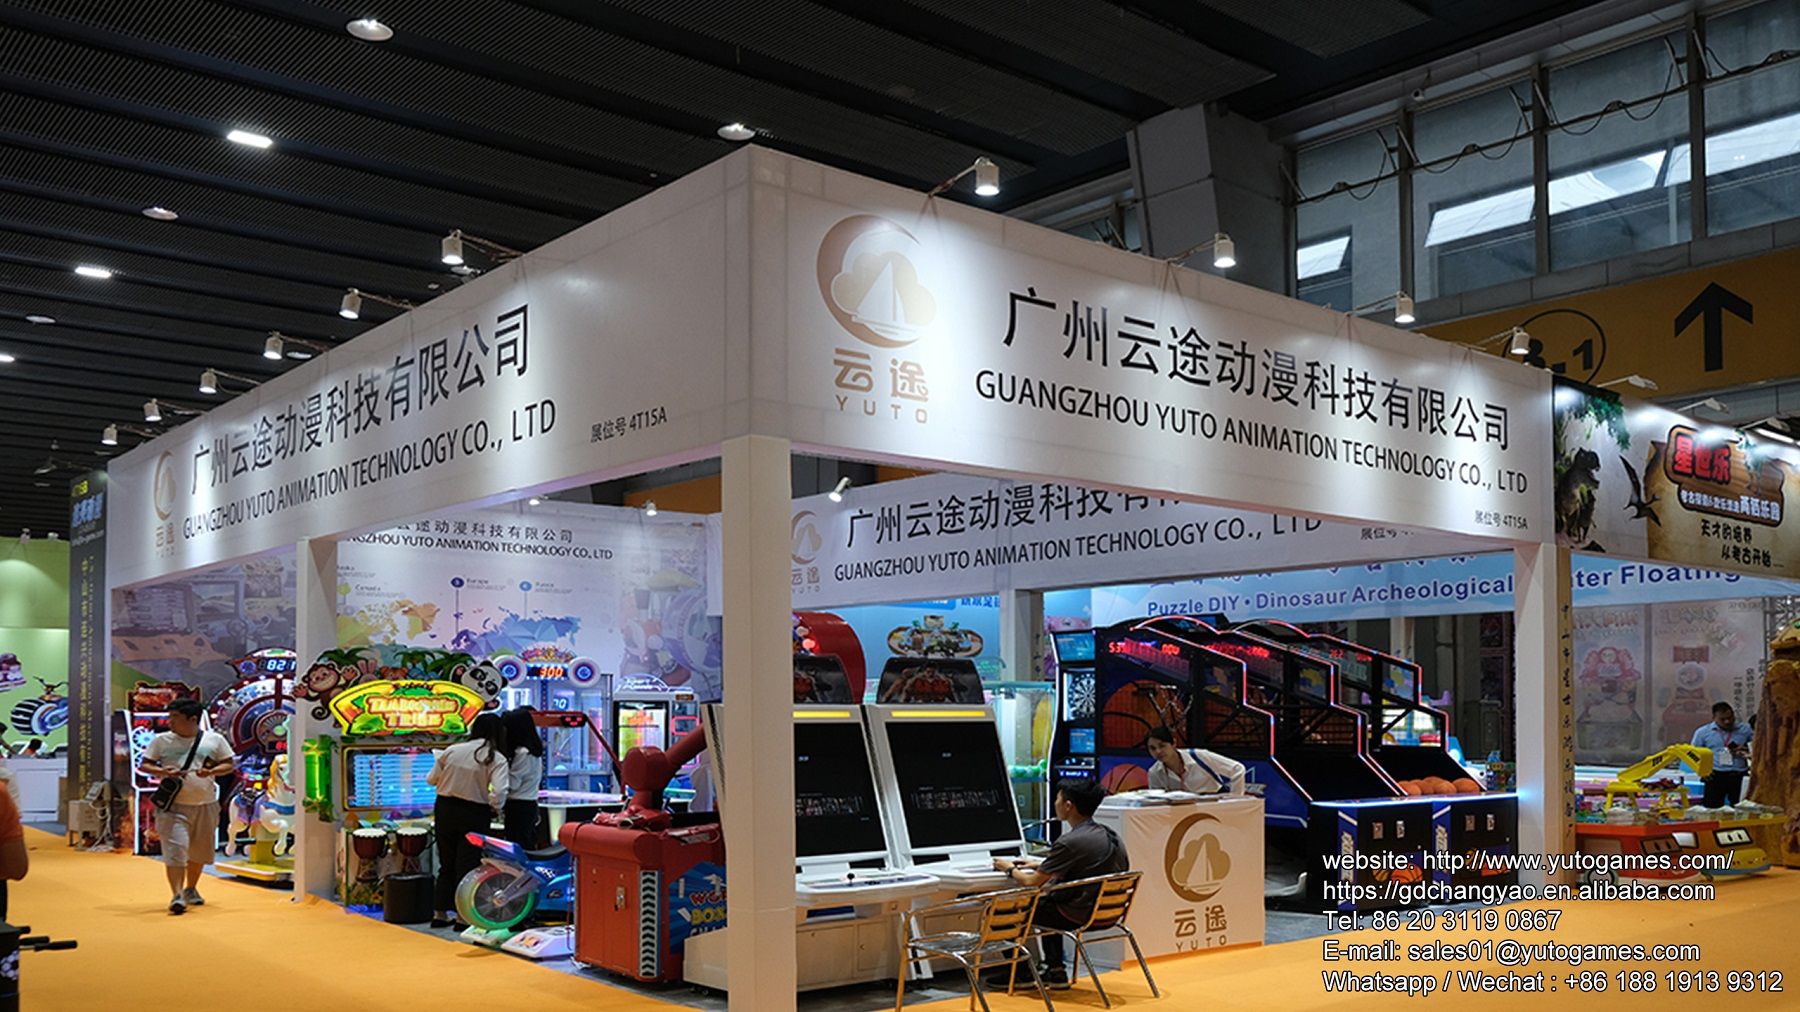 Guangzhou Yuto Animation Technology Co., Ltd Main Image